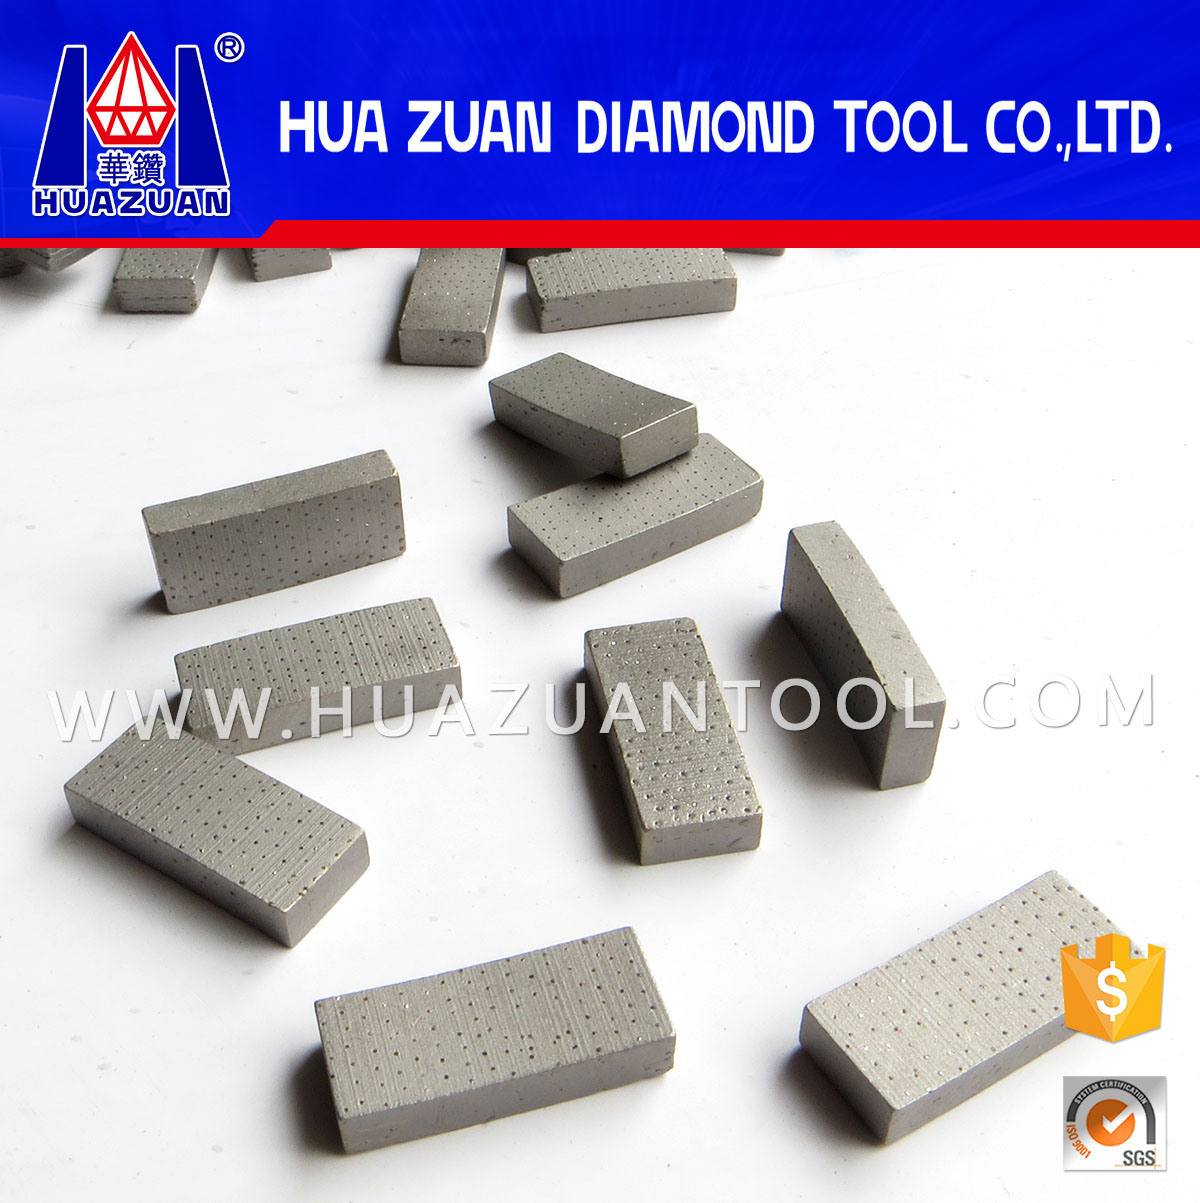 Special Design Arix Diamond Segment for Cutting Mable Granite Sandstone